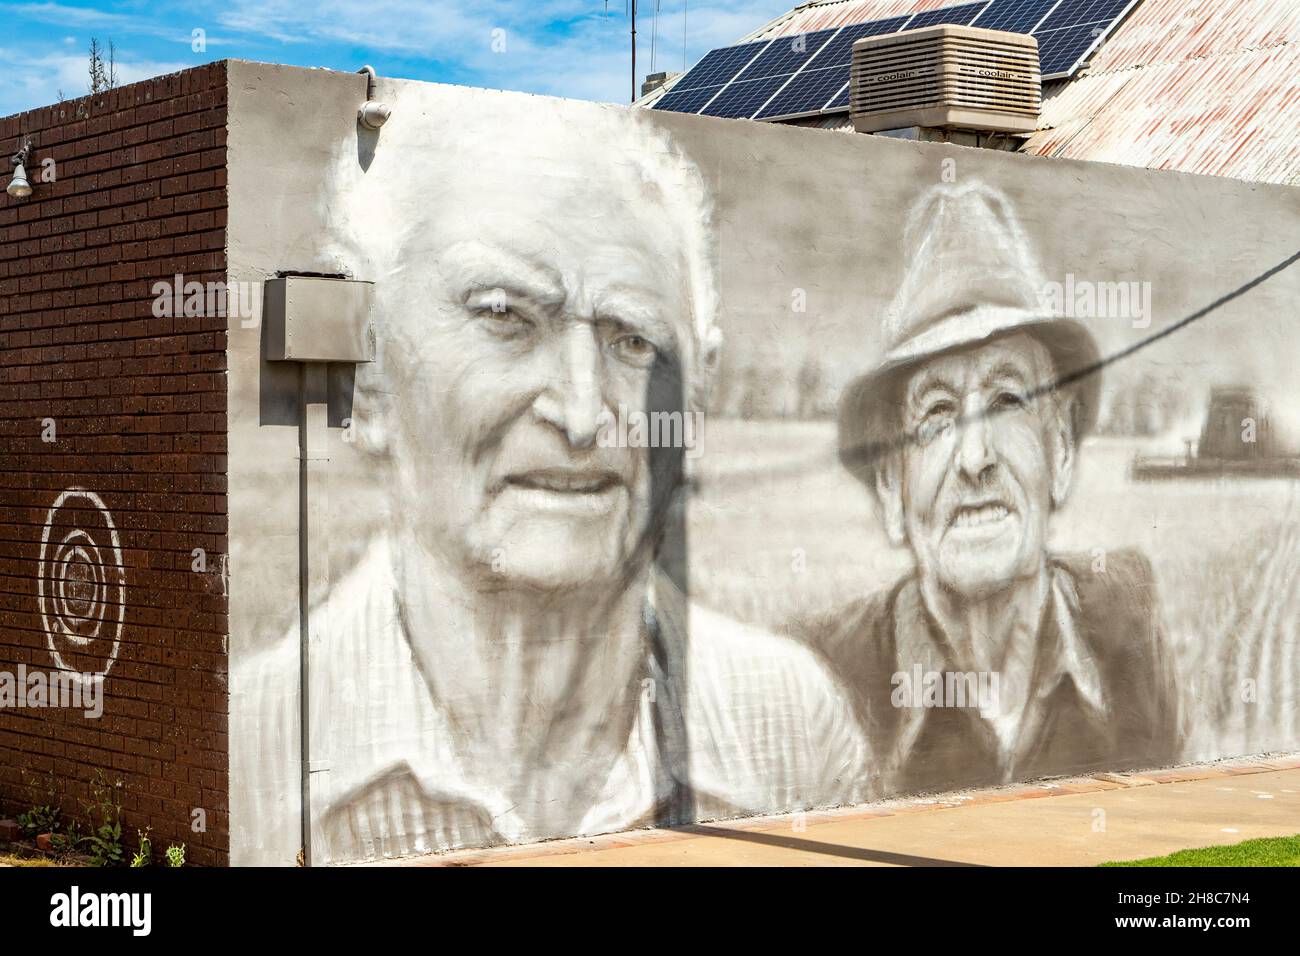 Mates Street Art, St Arnaud, Victoria, Australia Stock Photo